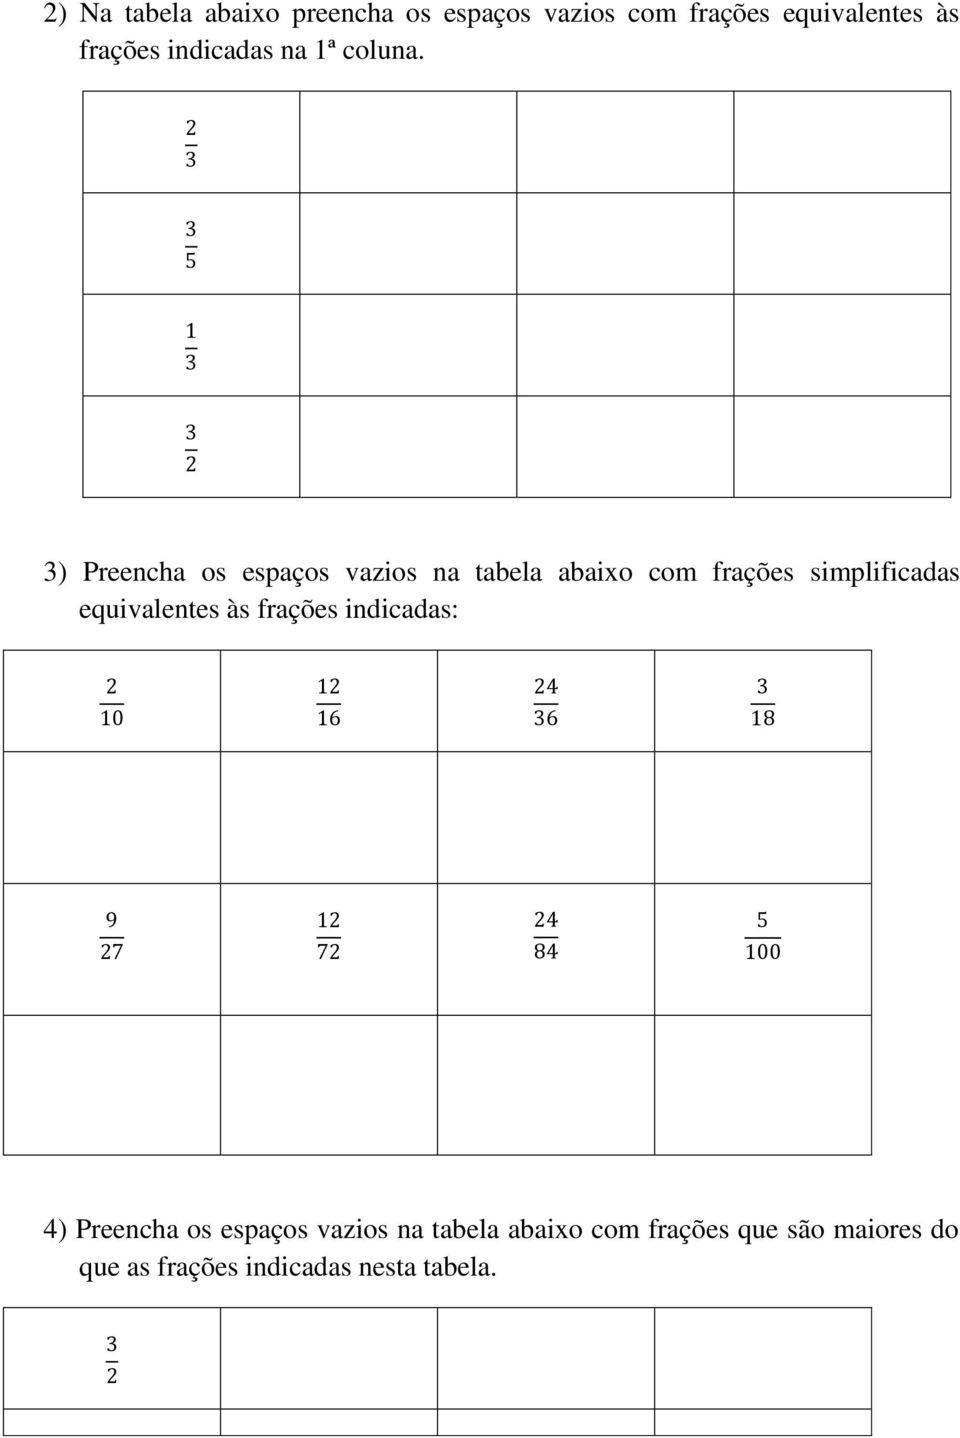 3) Preencha os espaços vazios na tabela abaixo com frações simplificadas